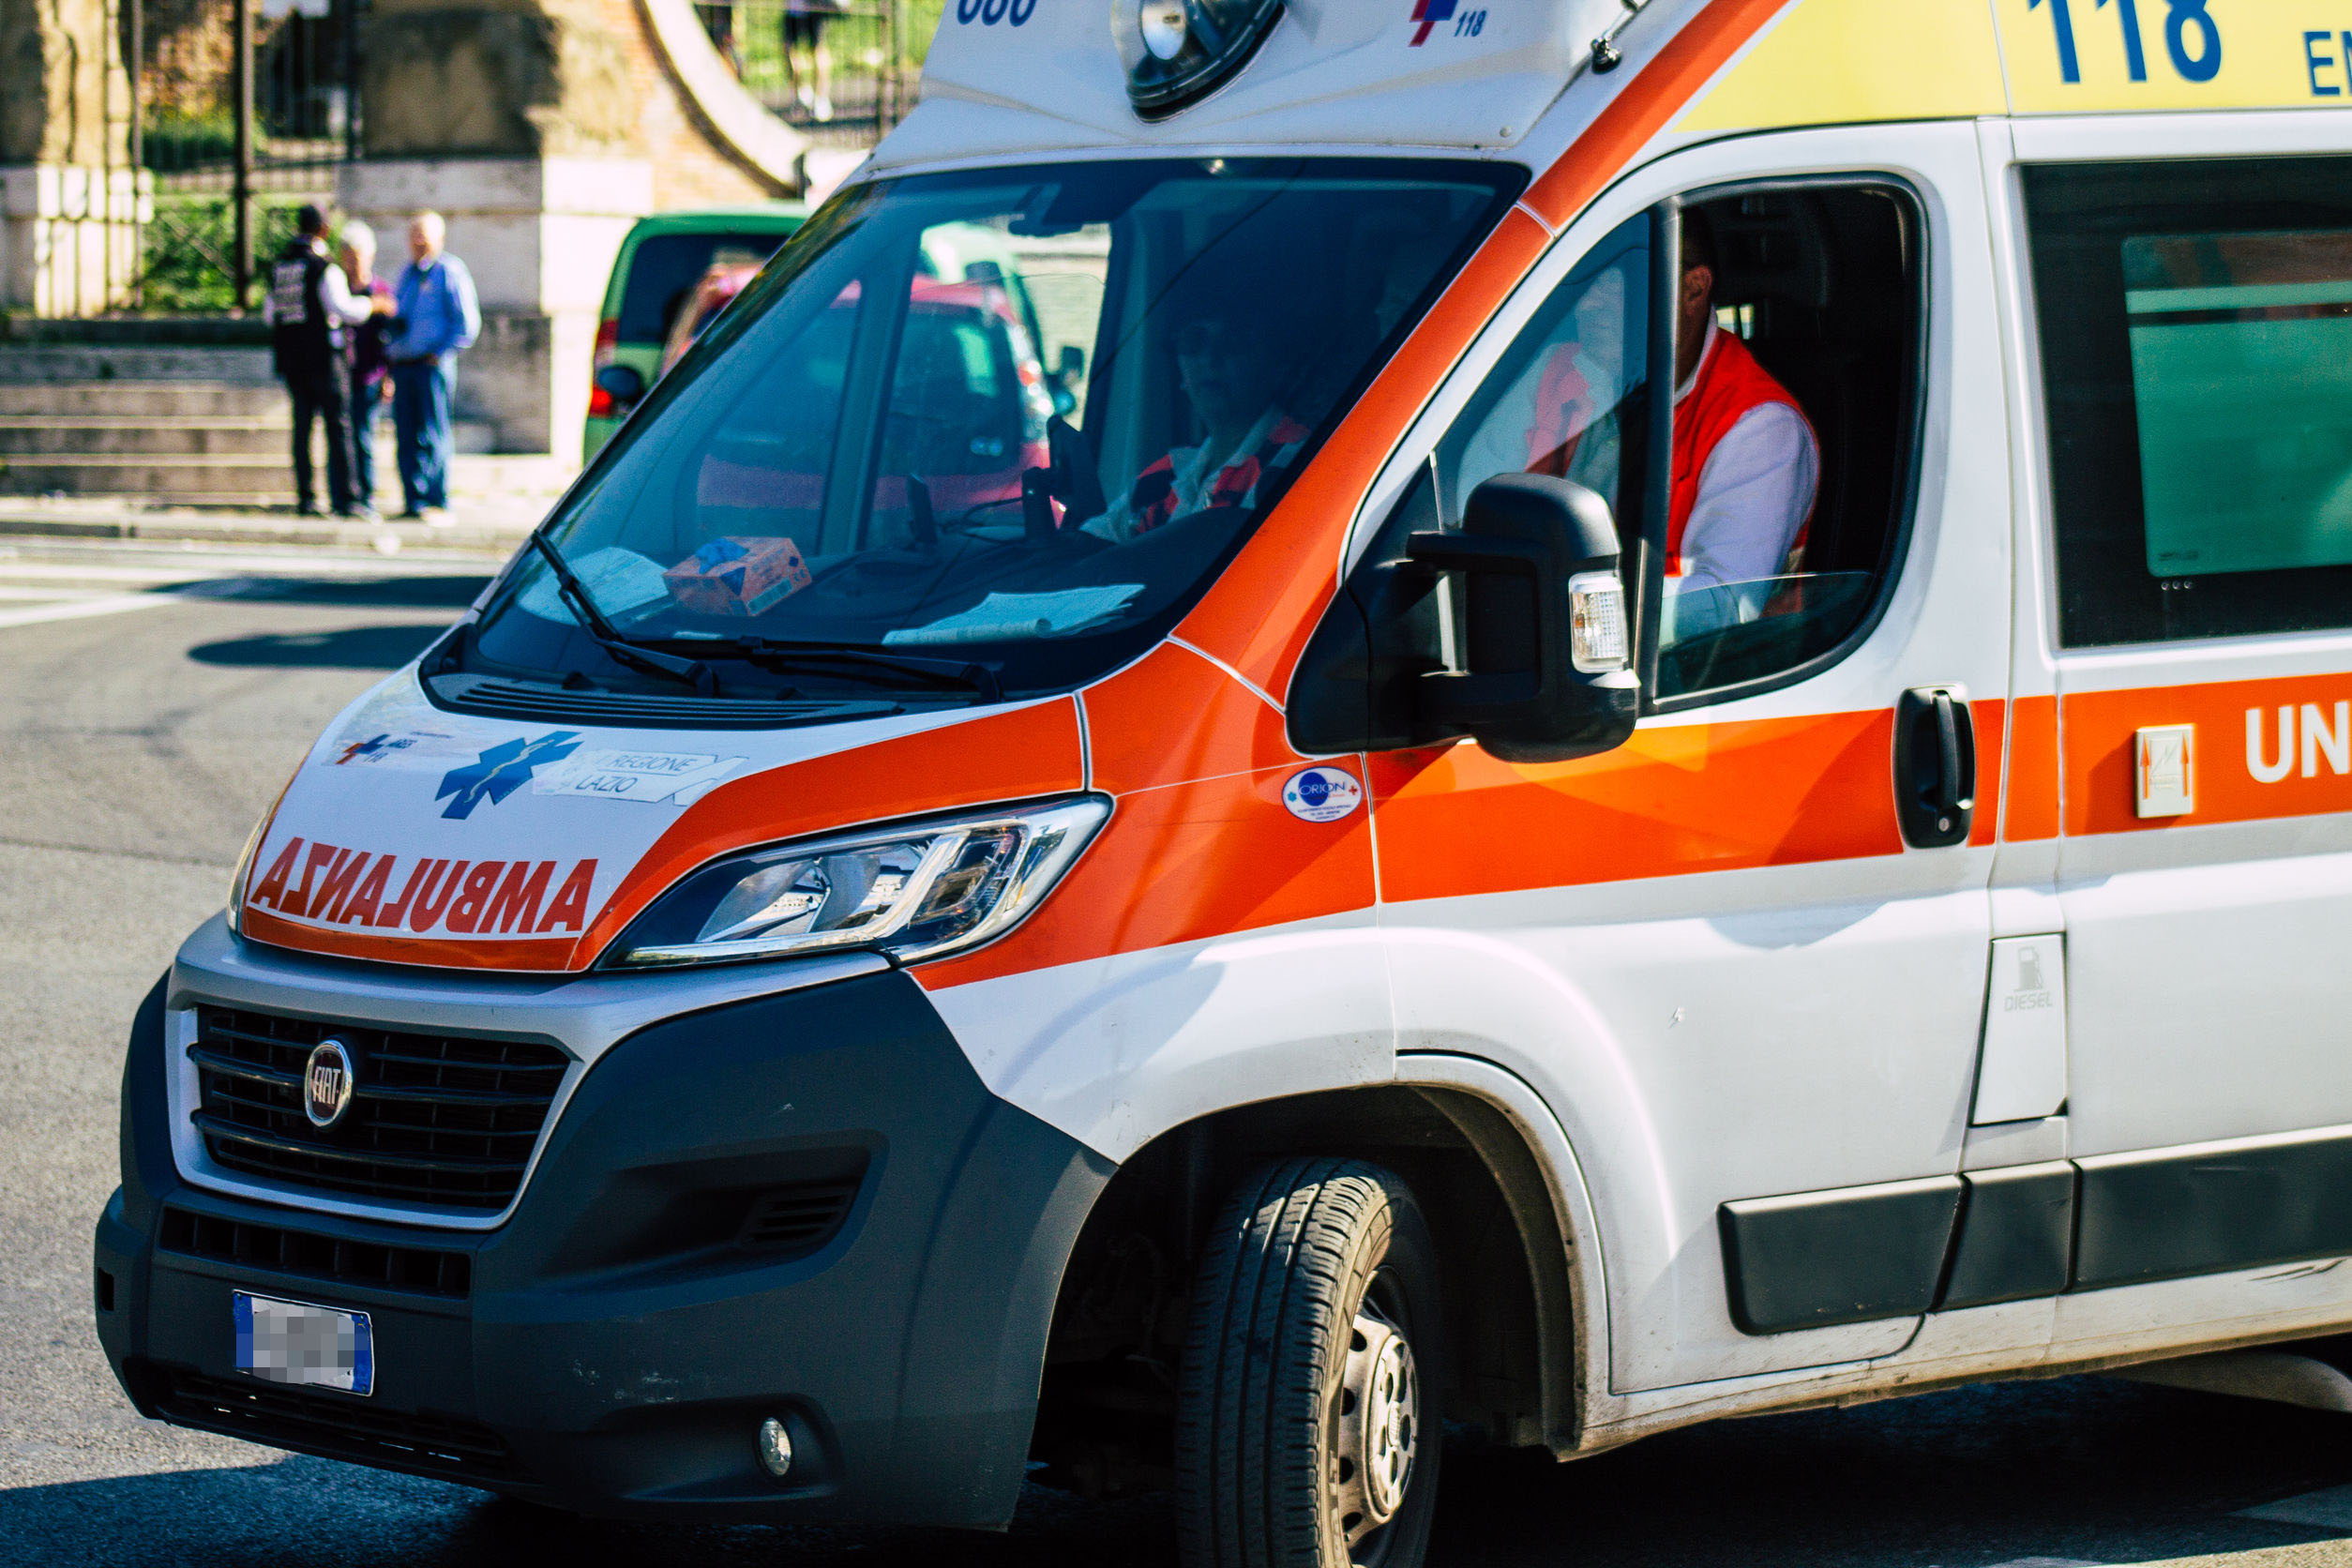 Rassegna stampa. Sicilia: l’ambulanza arriva senza medico e infermiere, anziana muore nel tragitto per l’ospedale